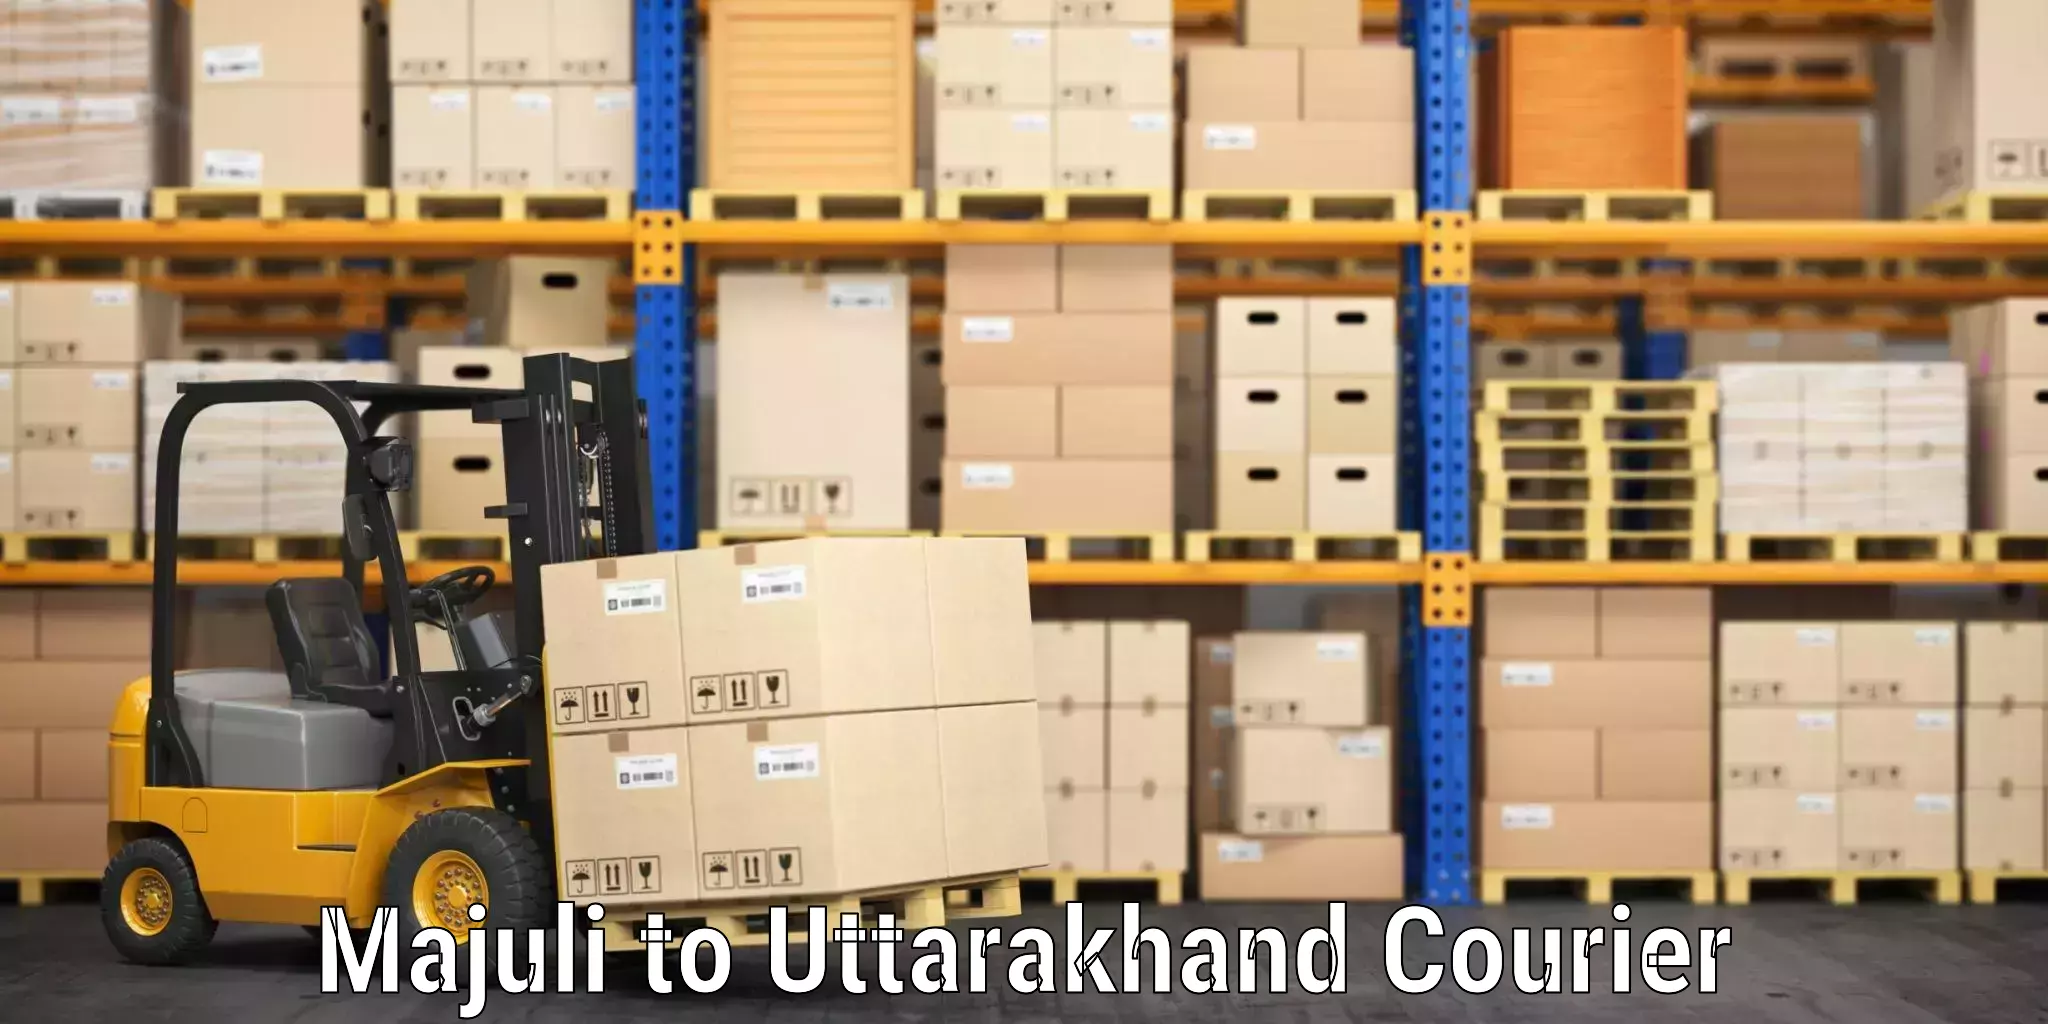 Luggage shipment strategy Majuli to Uttarakhand